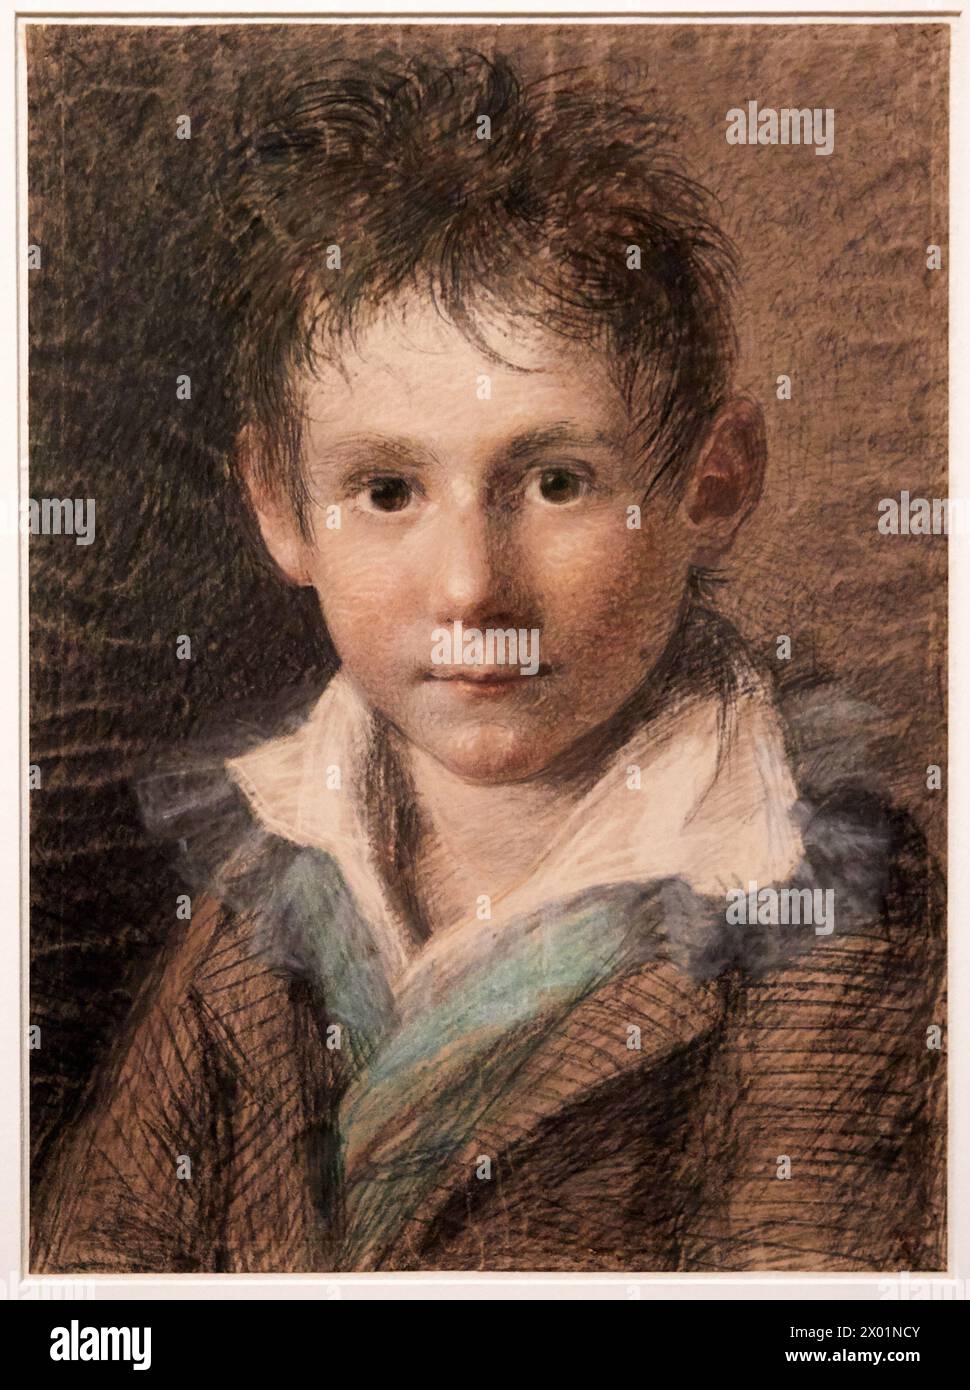 "Portrait en buste d'un jeune garcon", Maria Ellenrieder, 1791-1865, l'Allemagne Romtique Exhibition, Dessins des musées de Weimar, Petit Palais Mu Foto Stock